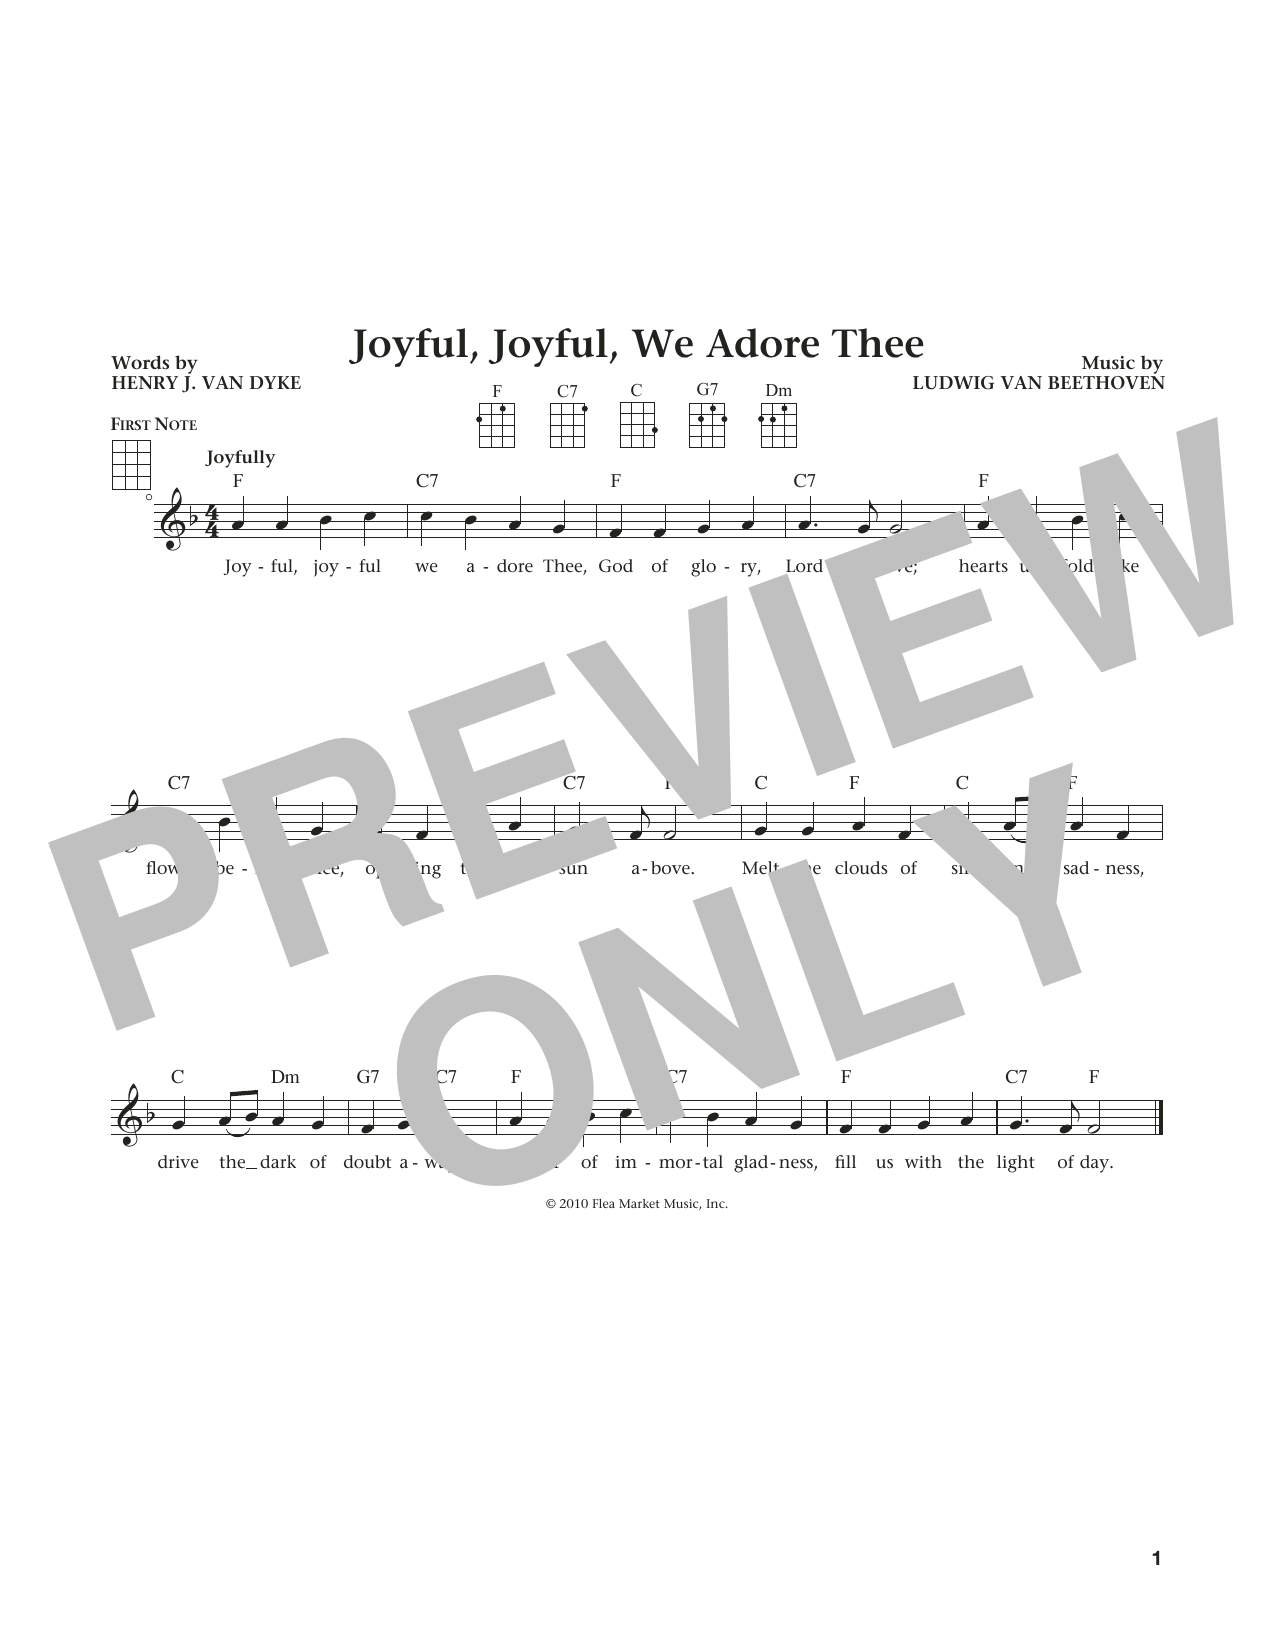 Ludwig van Beethoven Joyful, Joyful, We Adore Thee (from The Daily Ukulele) (arr. Liz and Jim Beloff) sheet music notes and chords arranged for Ukulele